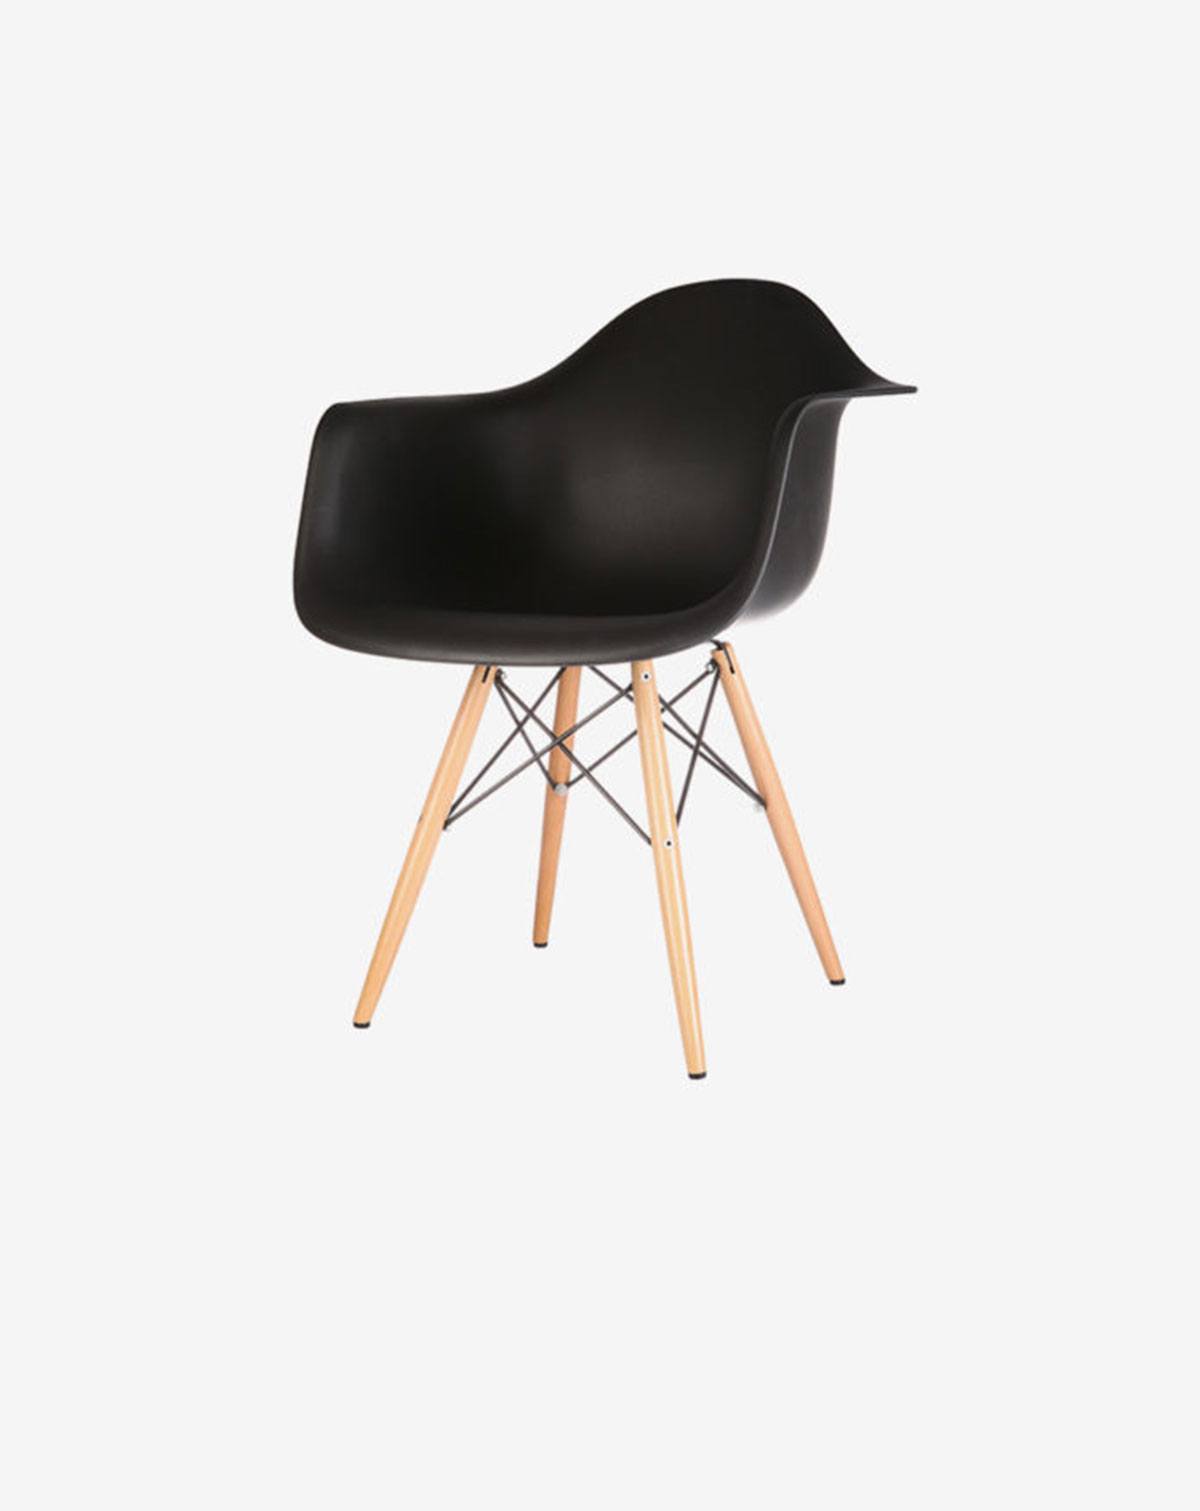 Creative black chair